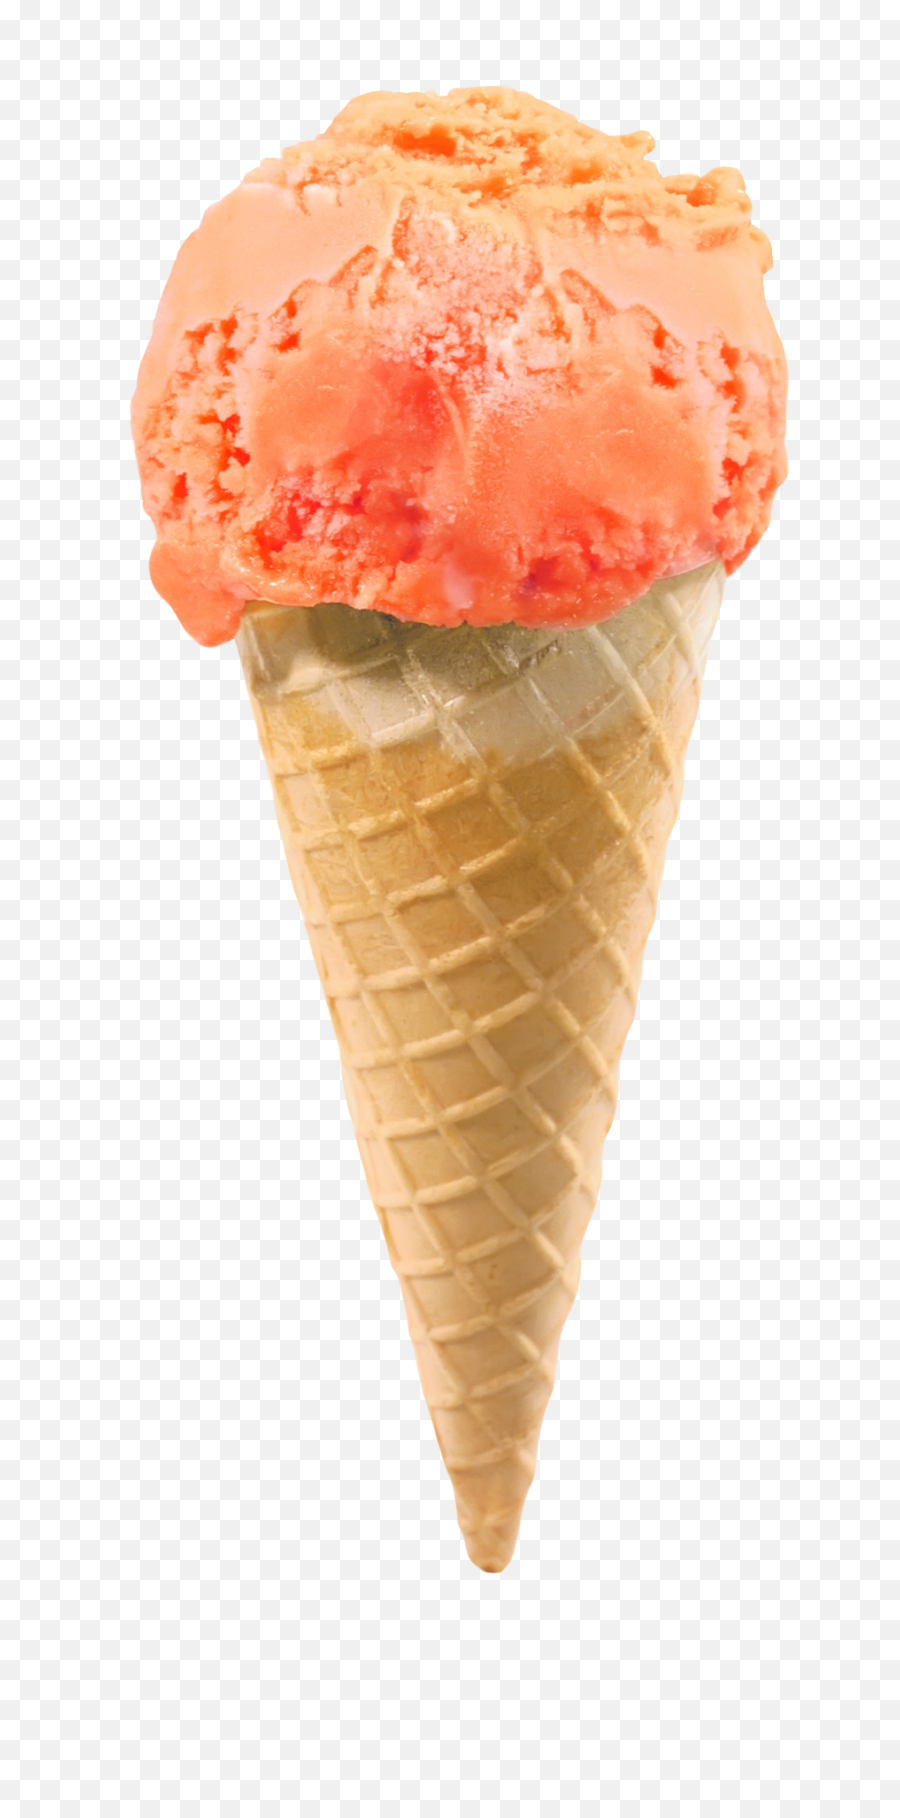 Ice Cream Cone Png Image - Transparent Ice Cream Cone Png,Ice Cream Transparent